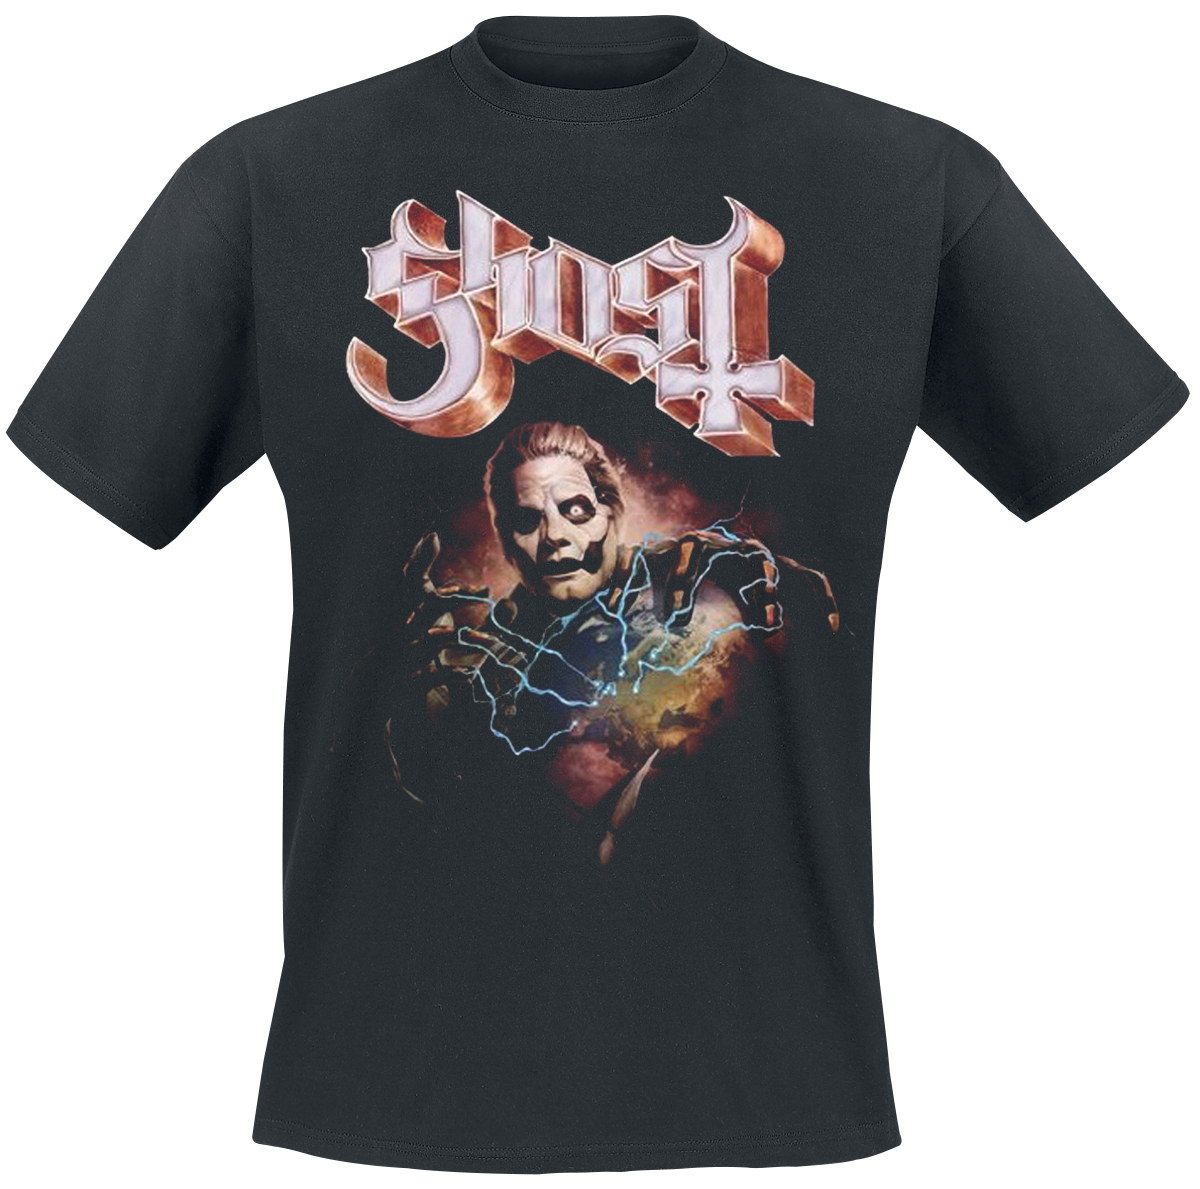 Ghost - Europe 23 Admat Tour Shirt - T-Shirt - schwarz